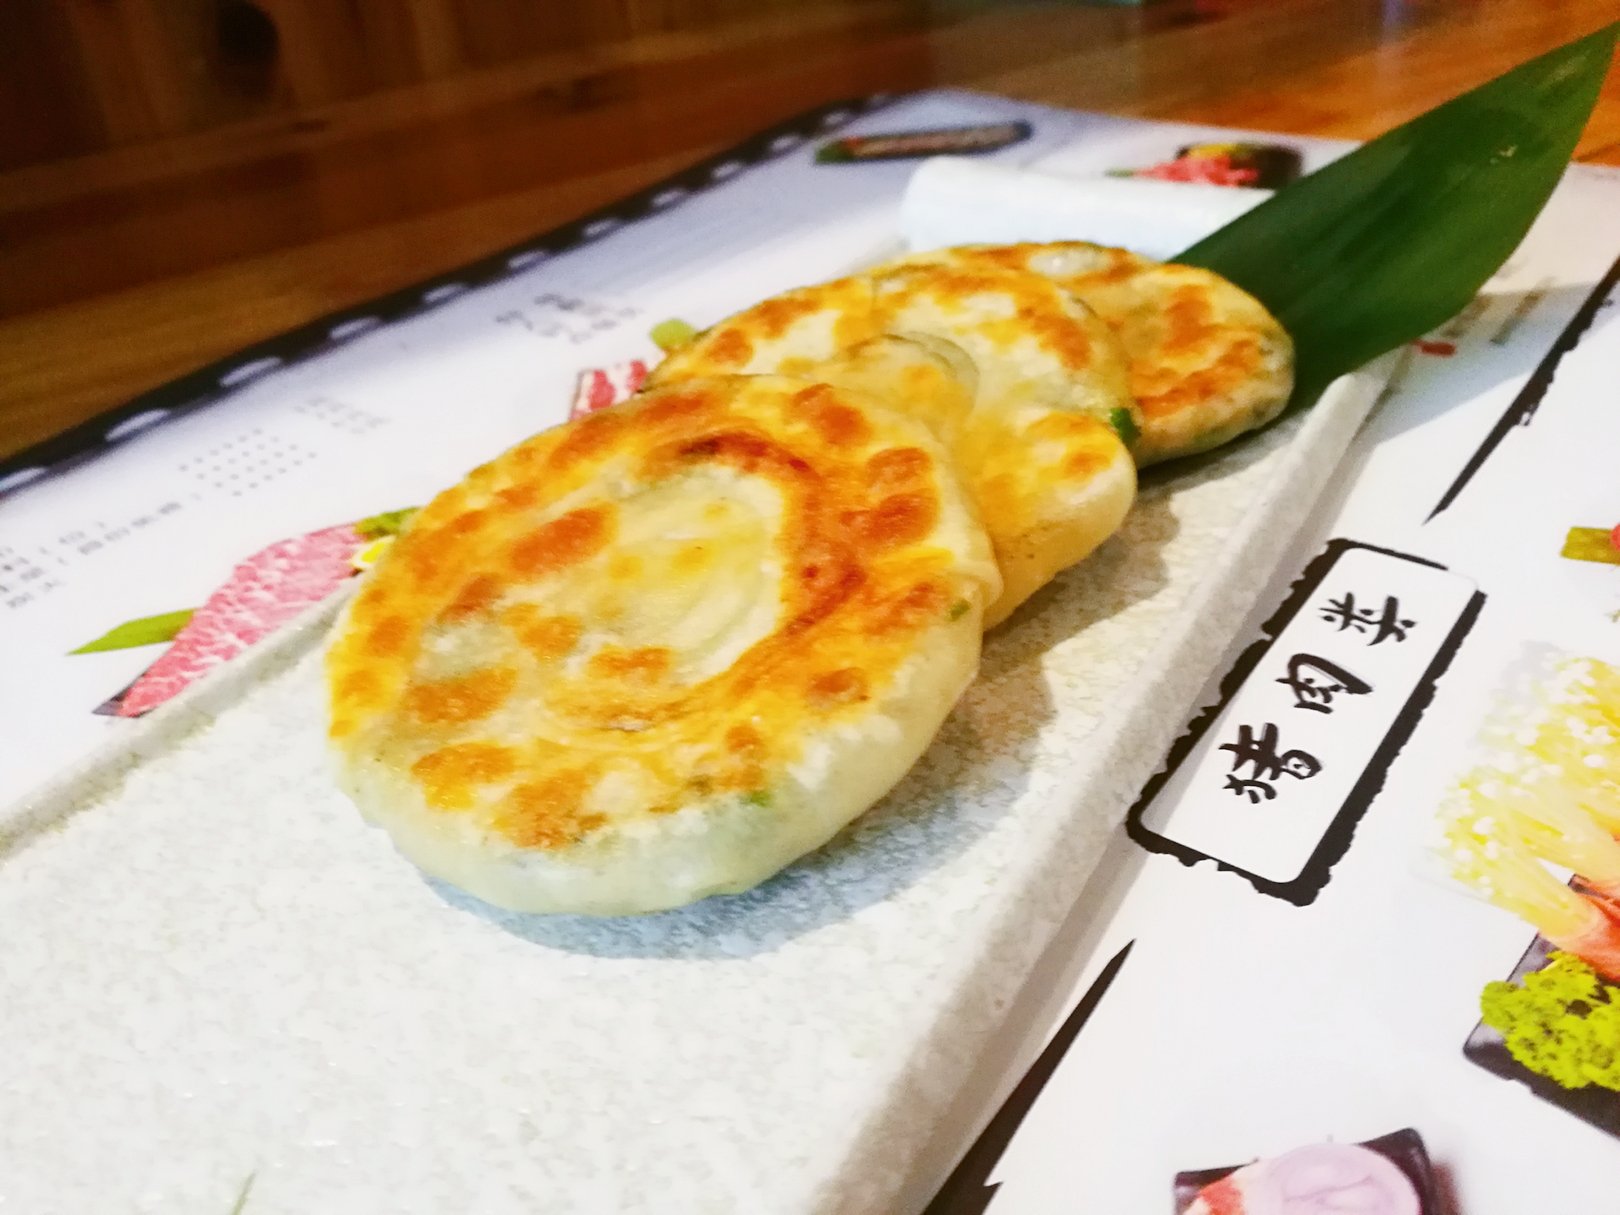 饺子皮葱油饼